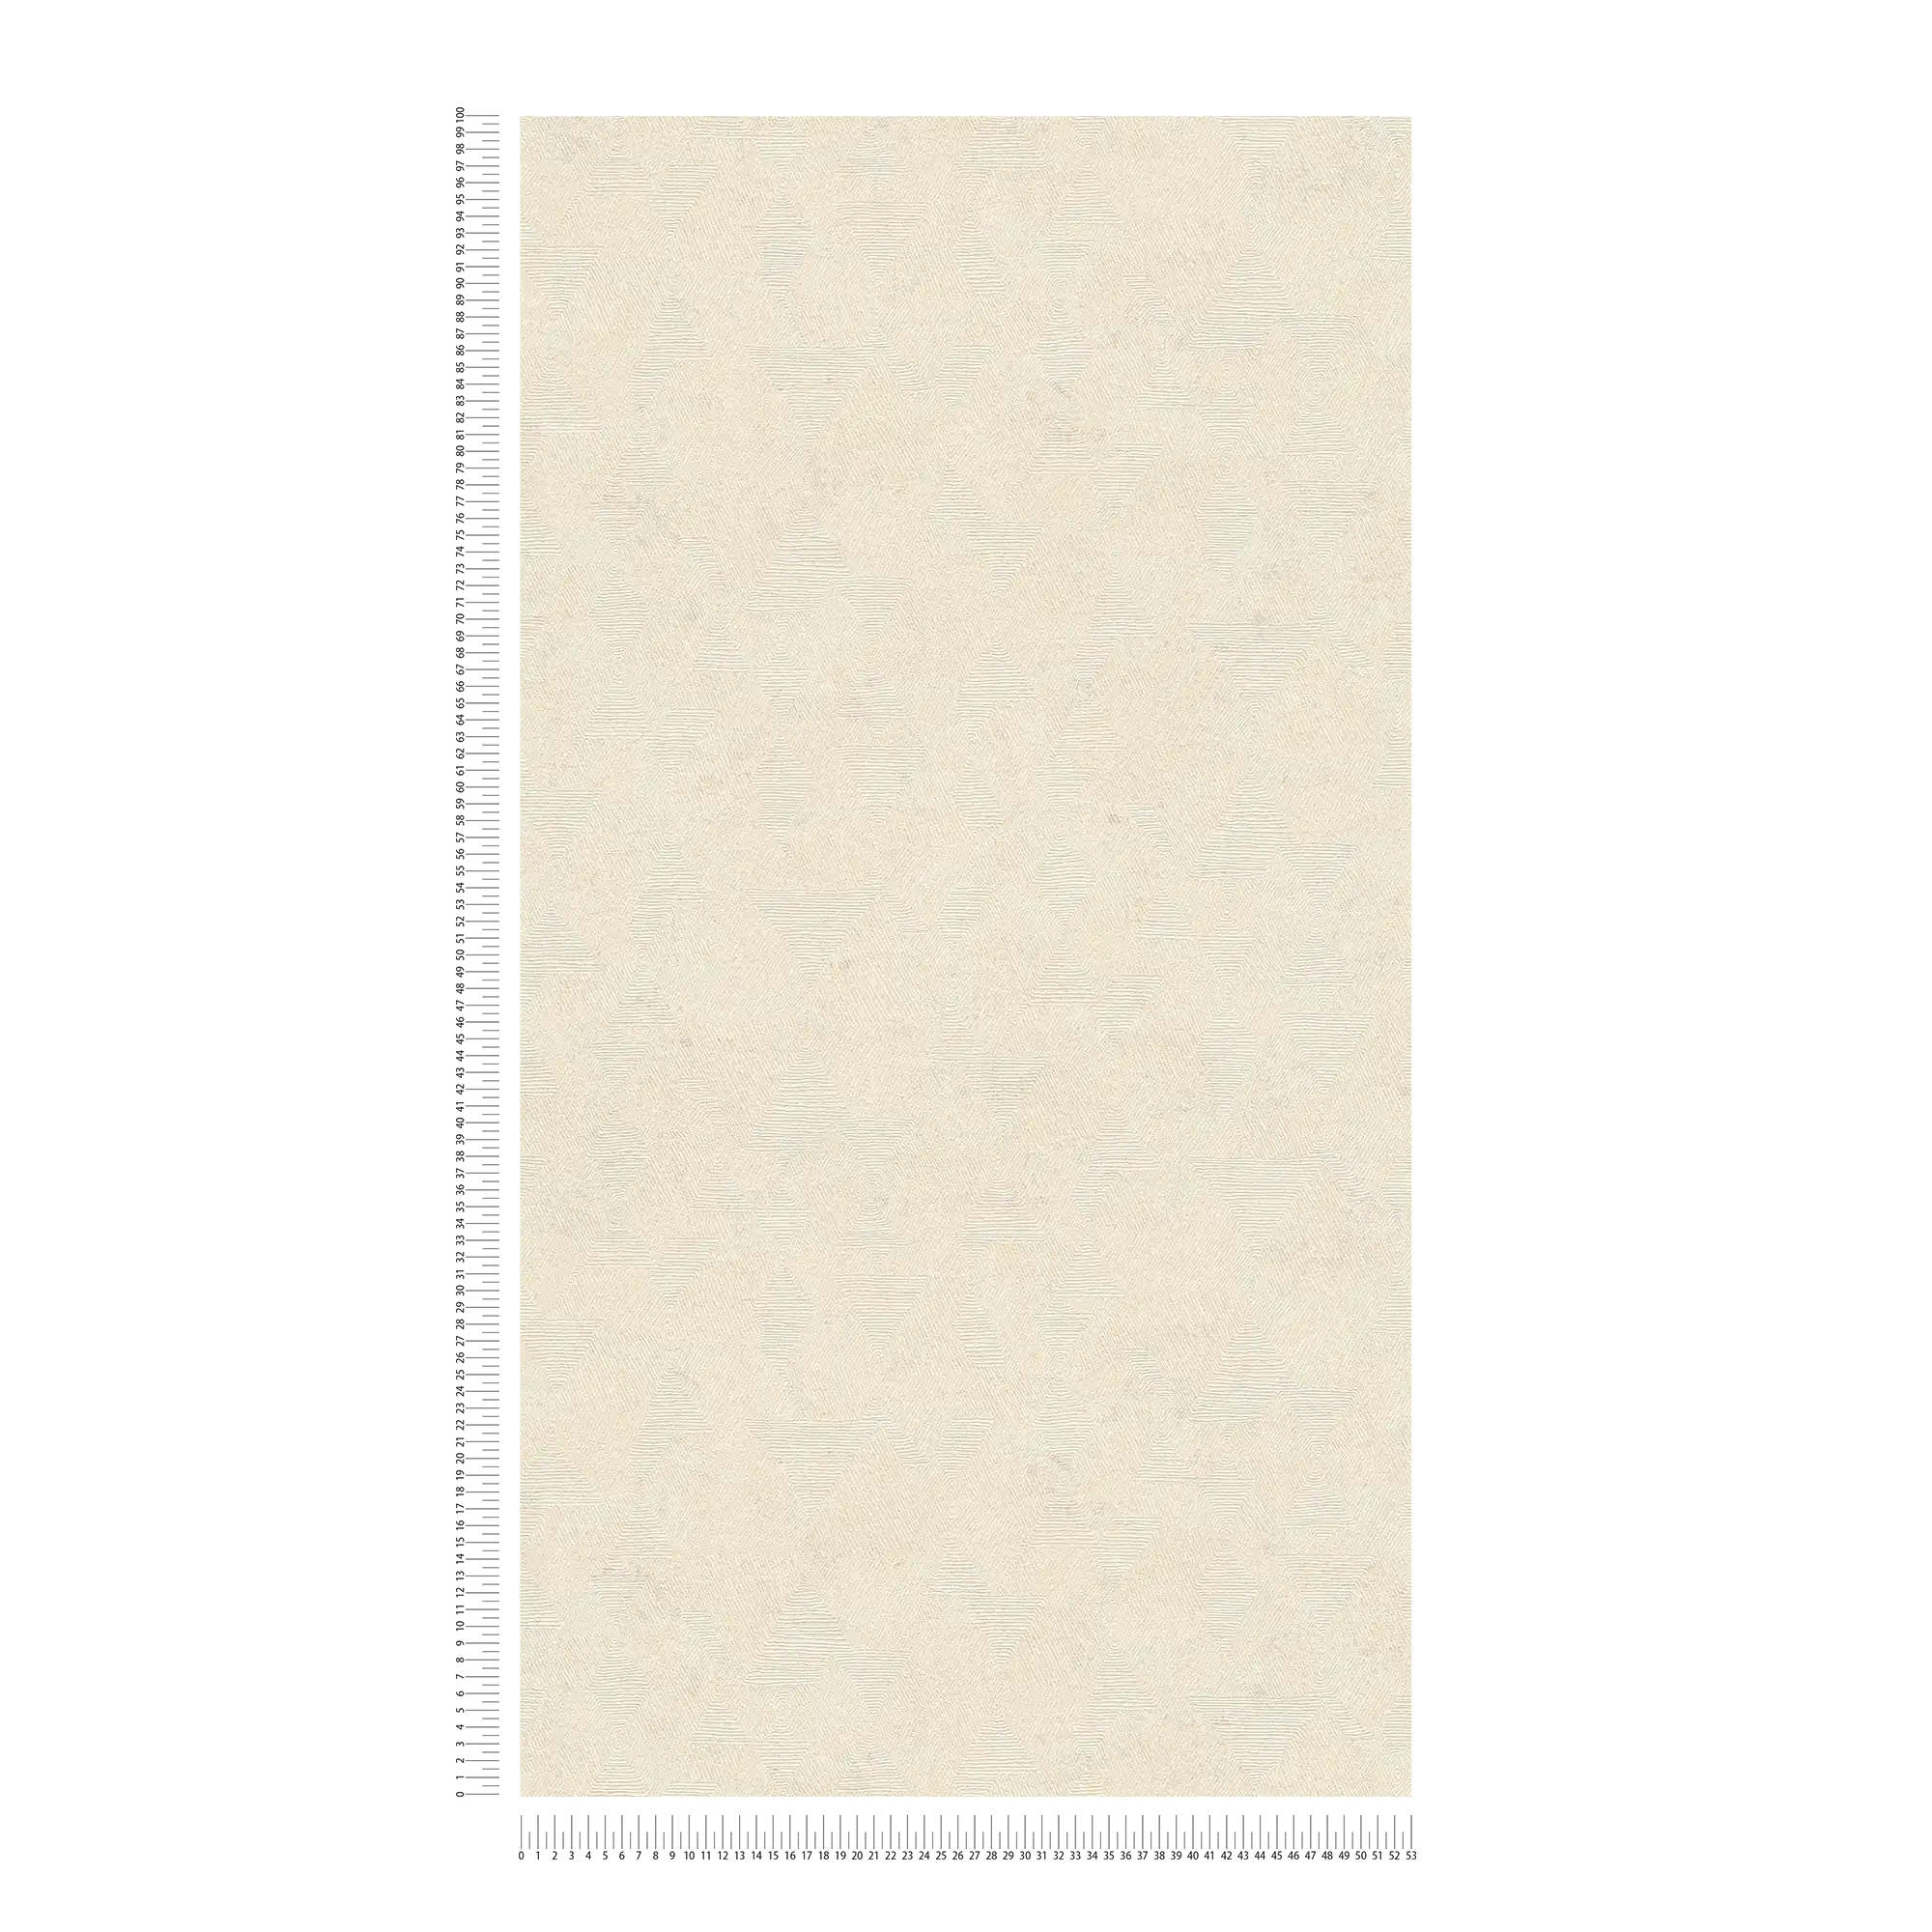             Papel pintado melange con estructura gráfica de aspecto étnico - beige, metálico
        